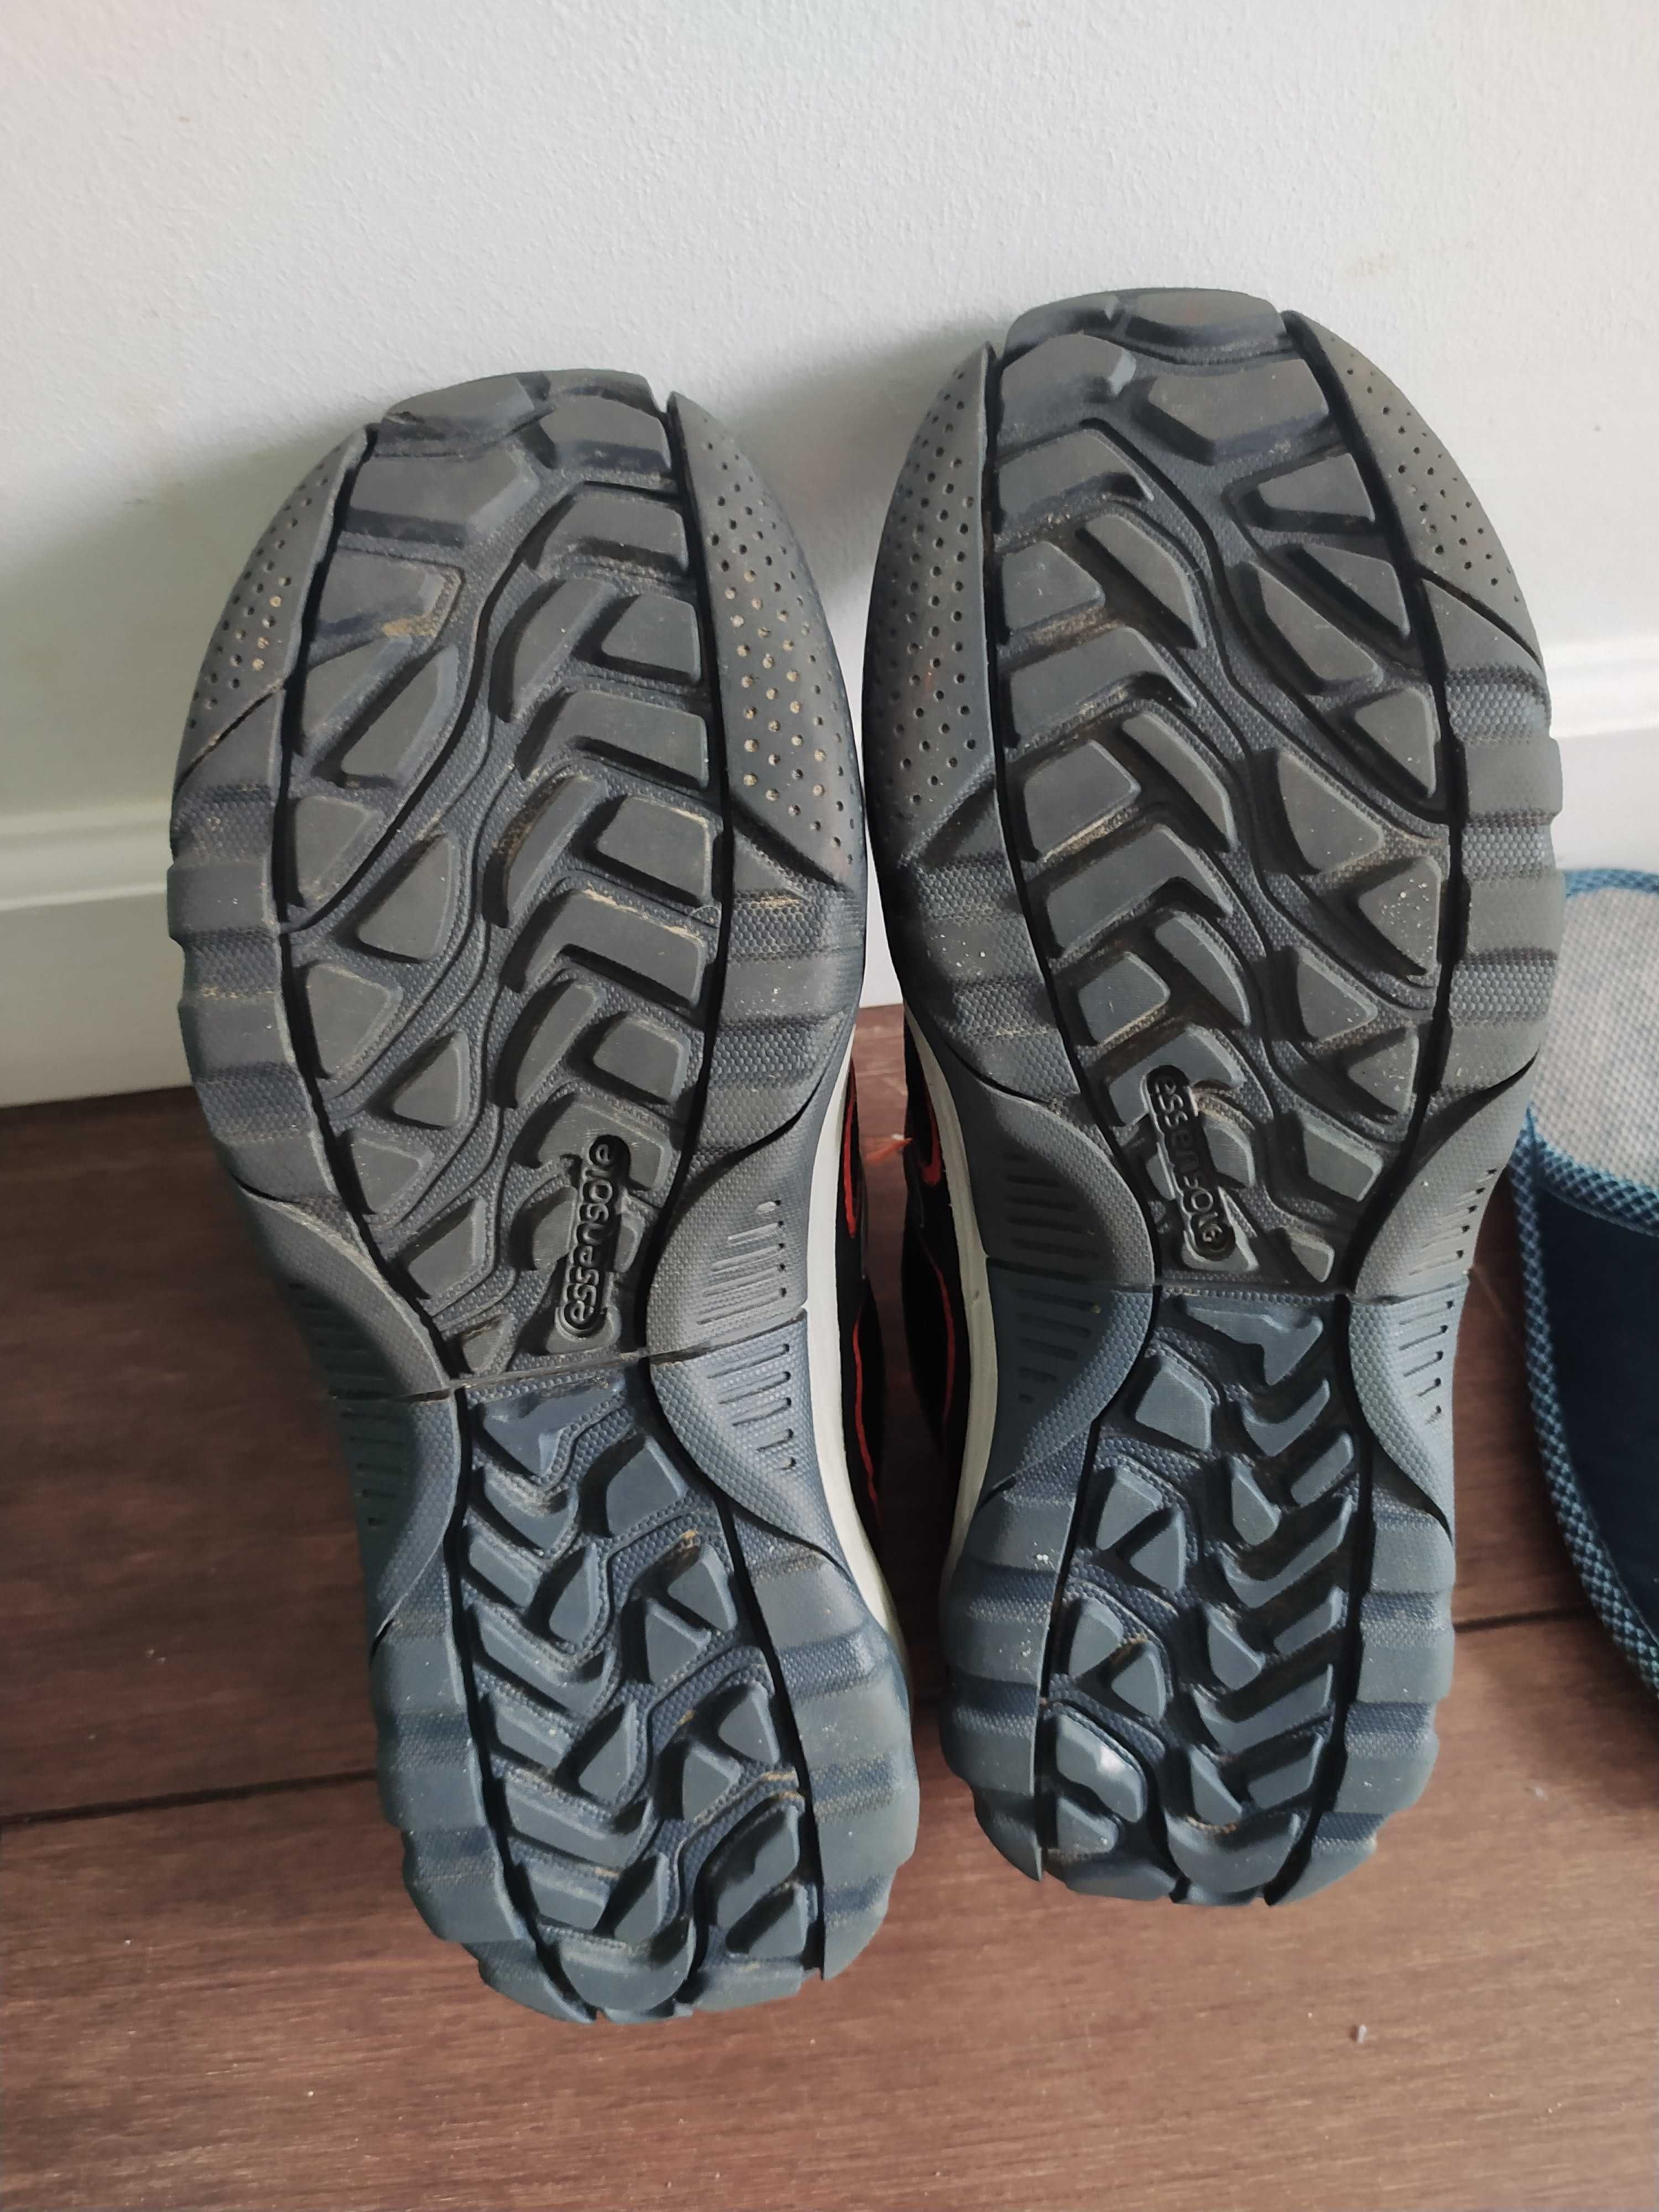 Міцні кросівки посилений носочок кроссовки quechua 33p. 21 см